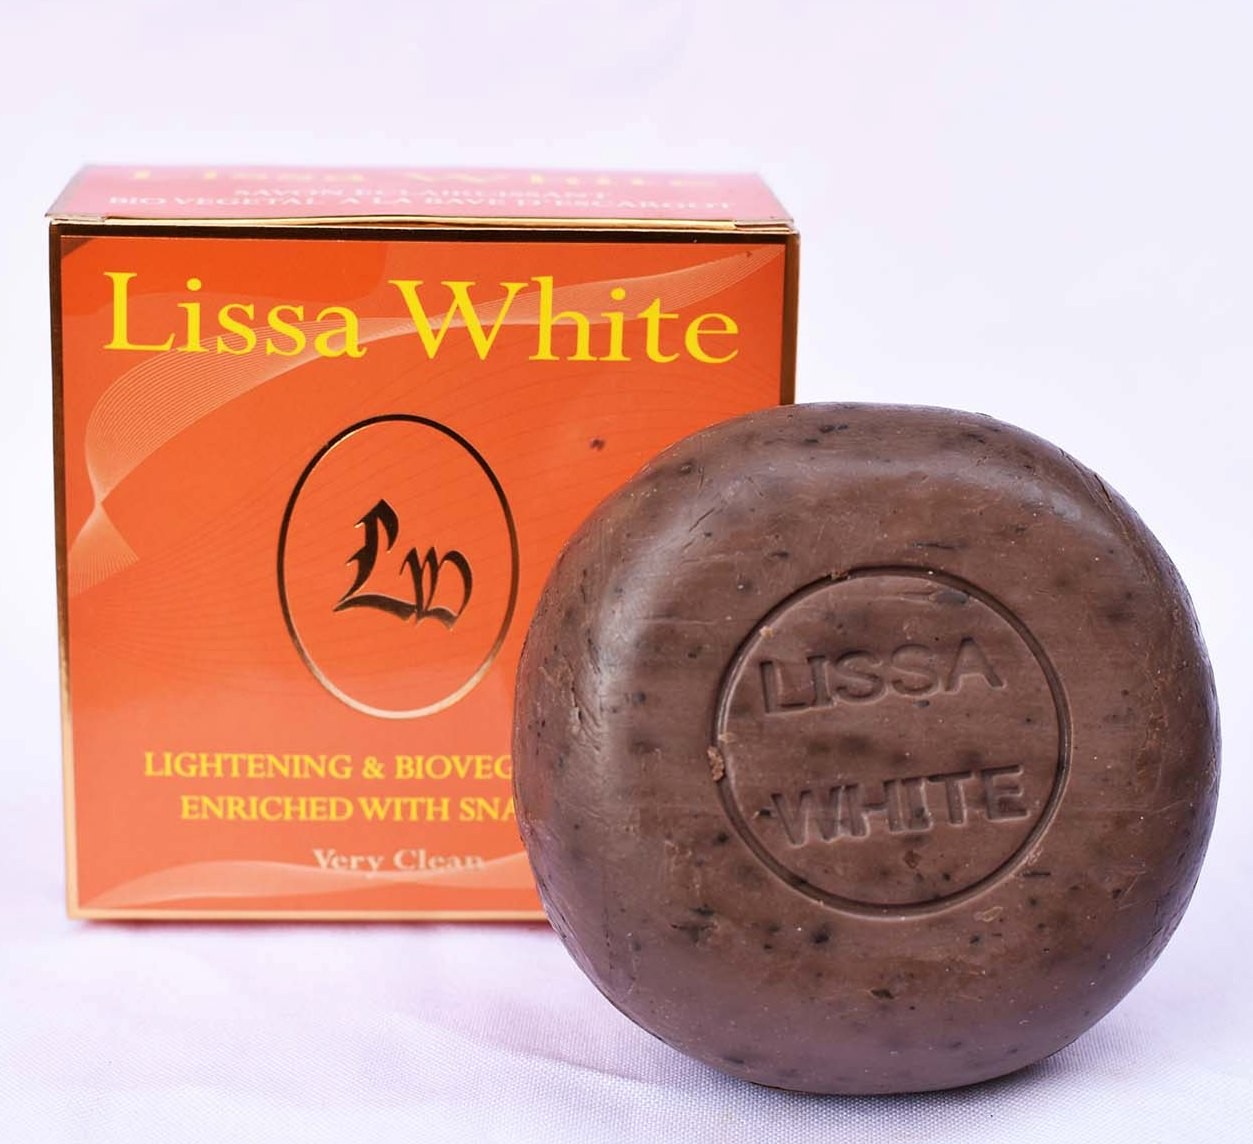 Lilly cosmétiques Savon noir liquide à l'eucalyptus - 250ml à prix pas cher